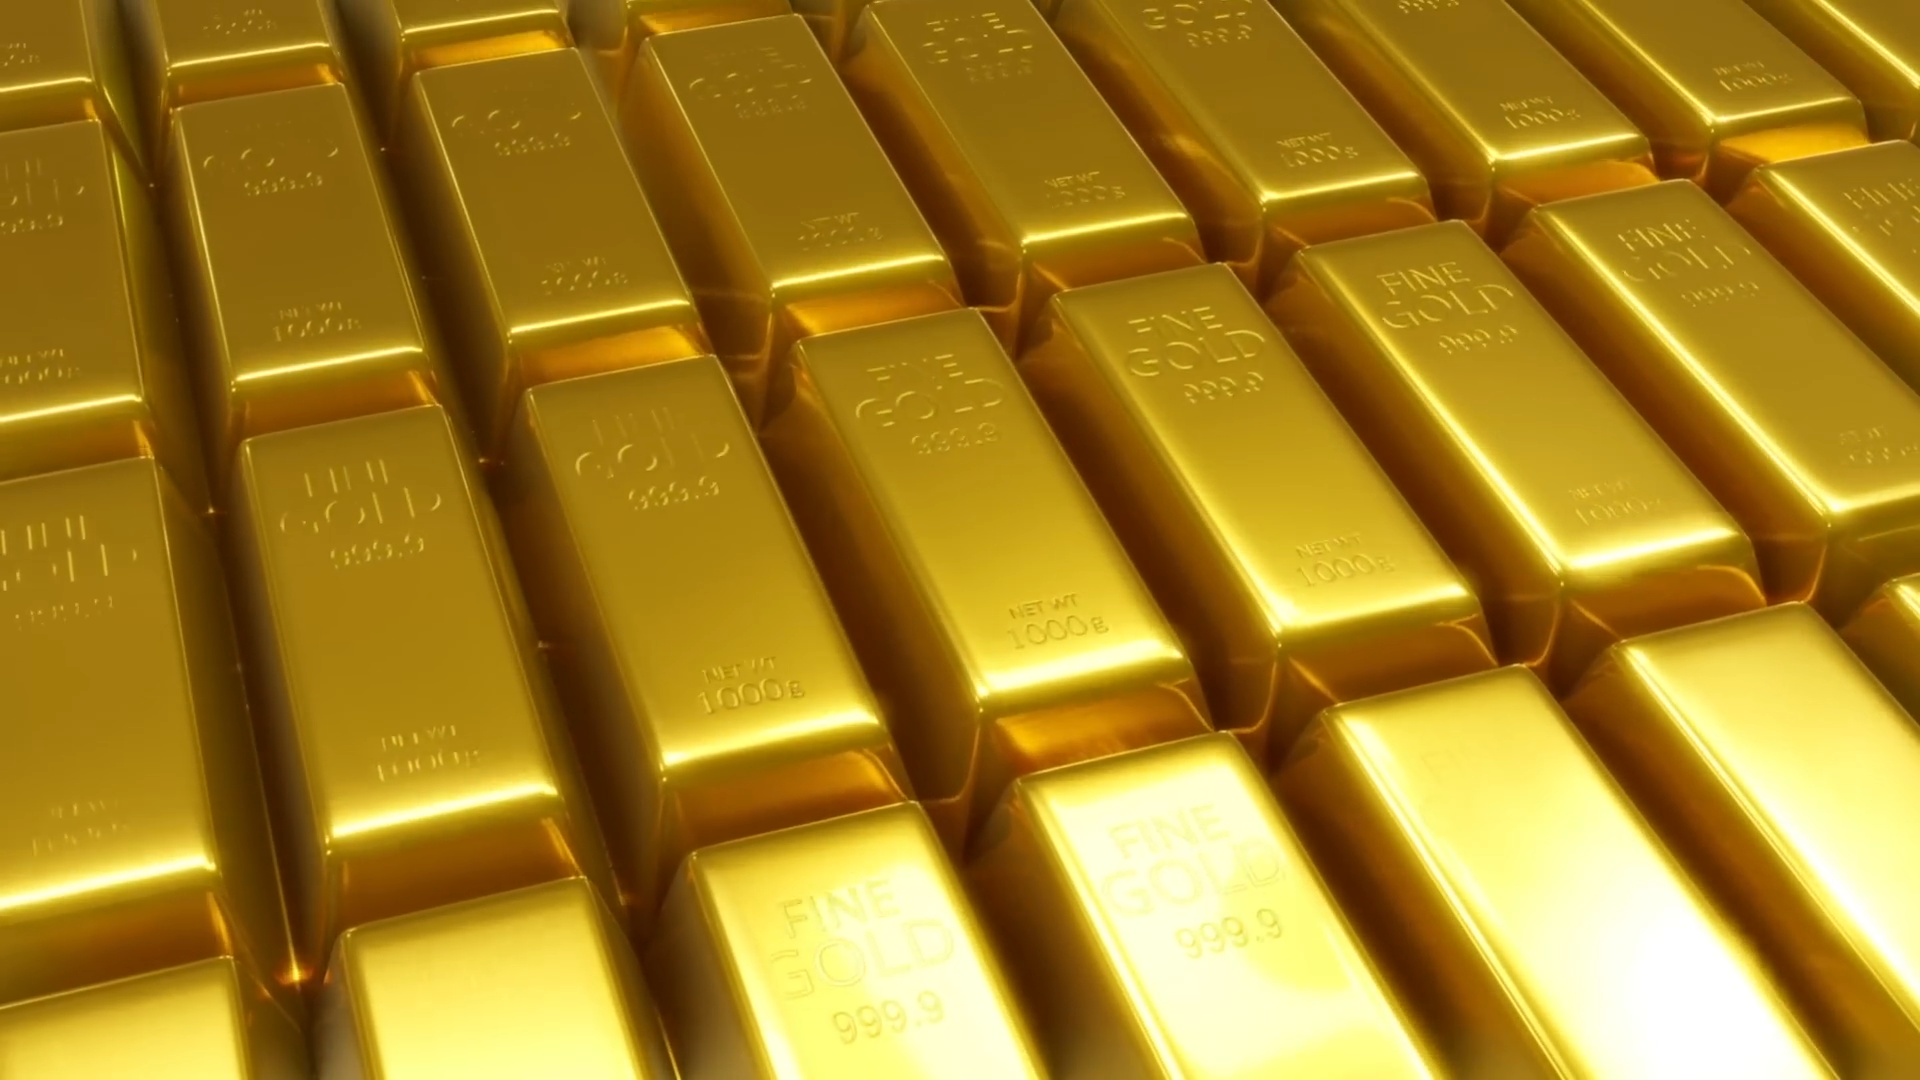 中国600吨黄金,为何存放在美国地下金库,难道不怕被独吞吗?